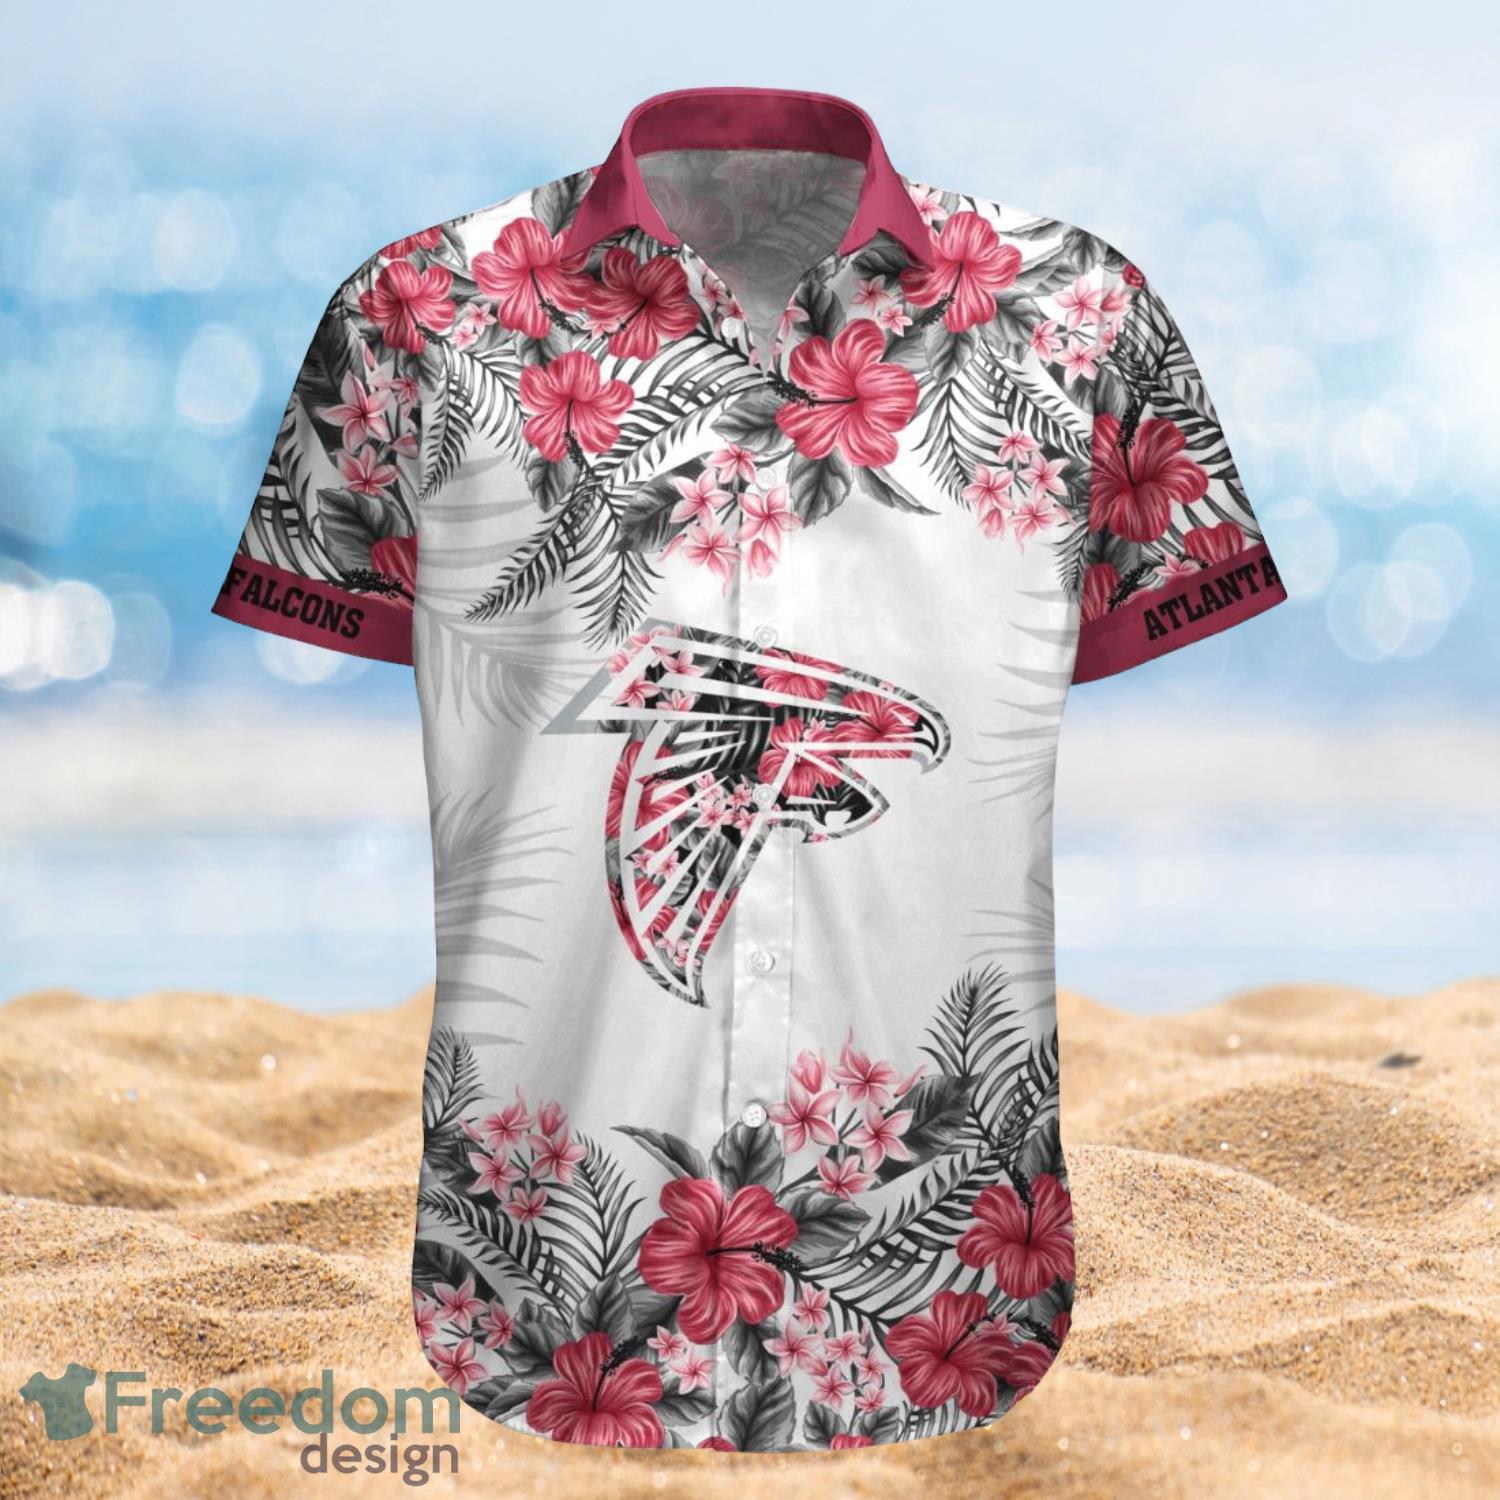 Atlanta Falcons Summer Beach Shirt and Shorts Full Over Print Product Photo 1